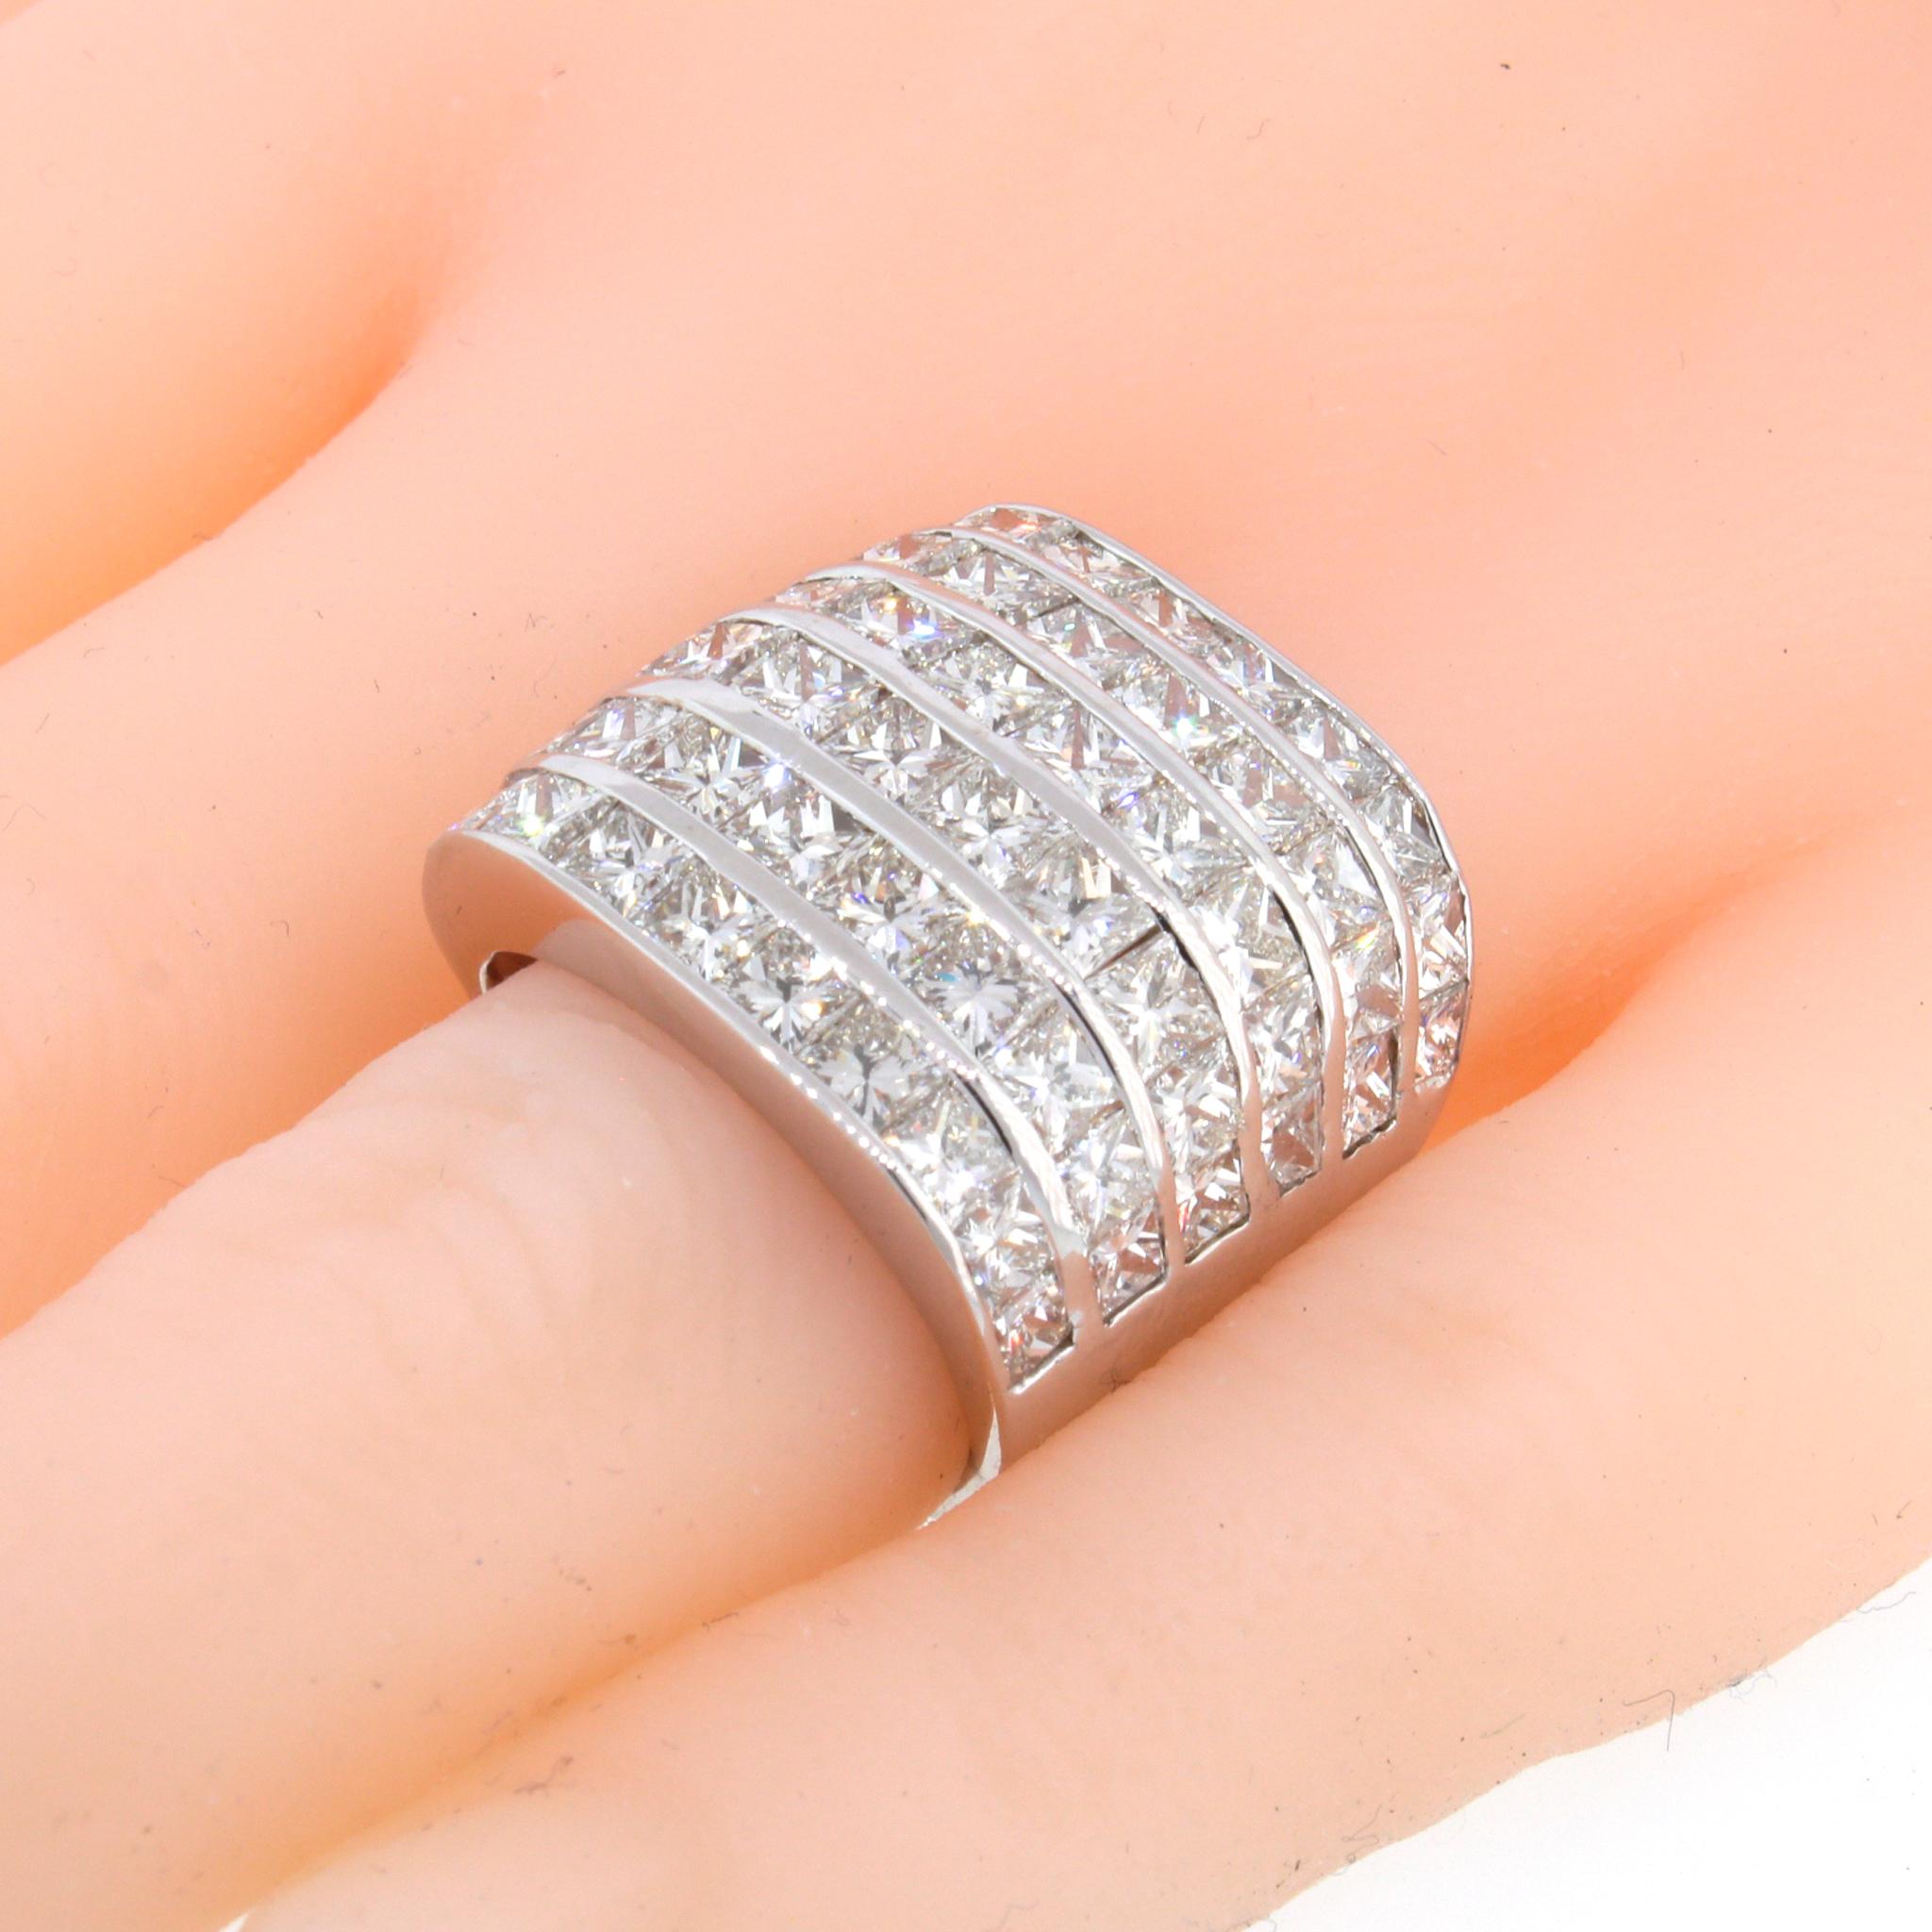 18 kt Weißgold
Diamant: 6 ct twd (geschätzt)
Riesiger Diamant-Look
Ringgröße: 5
Gesamtgewicht: 15,9 Gramm